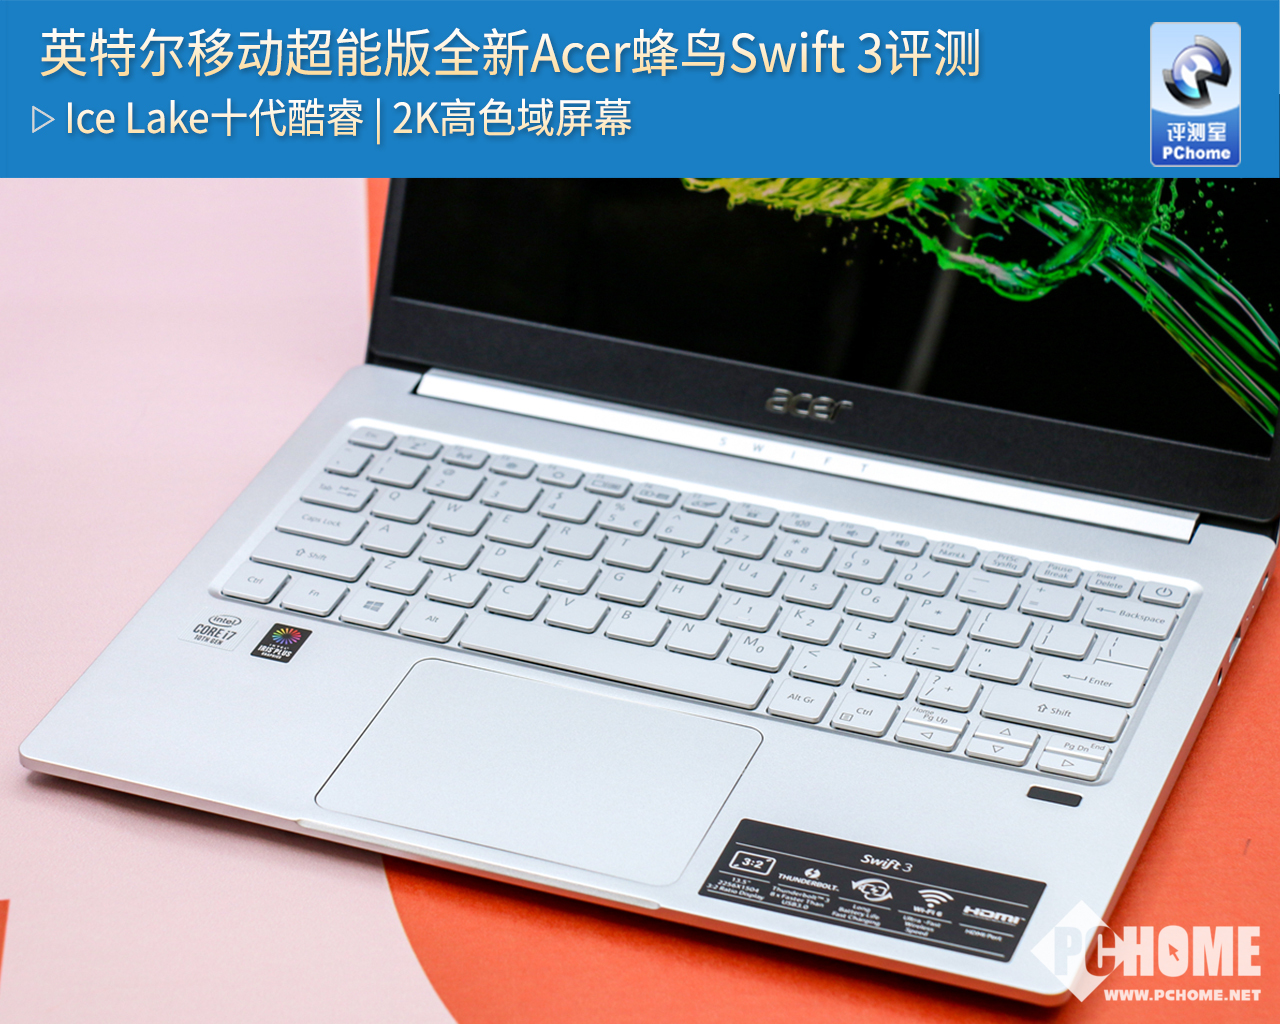 英特尔移动超能版 全新Acer蜂鸟Swift 3评测